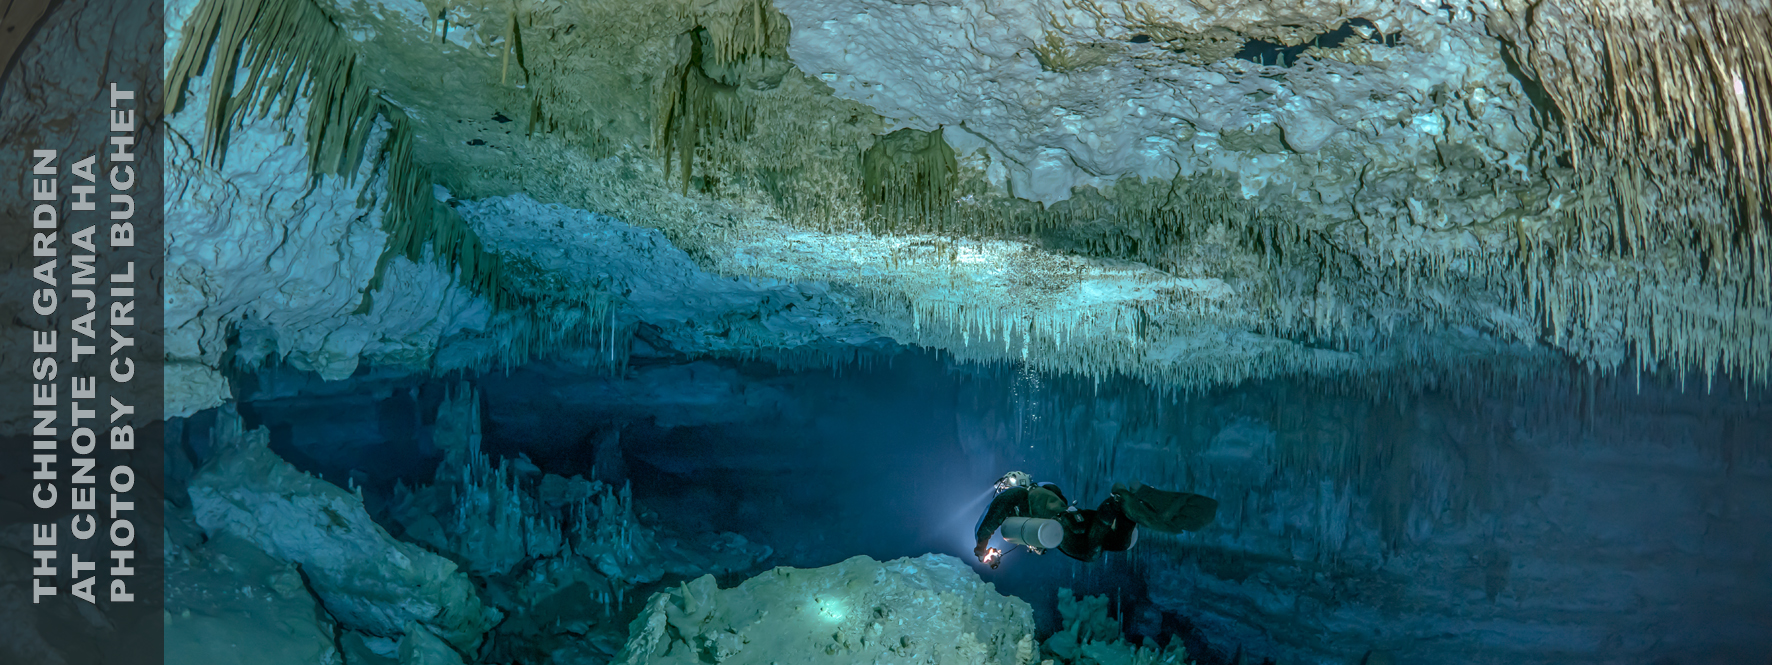 墨西哥洞穴潜水, 图卢姆洞穴潜水, 洞穴潜水培训, 卡门海滩潜水, 侧挂潜水培训